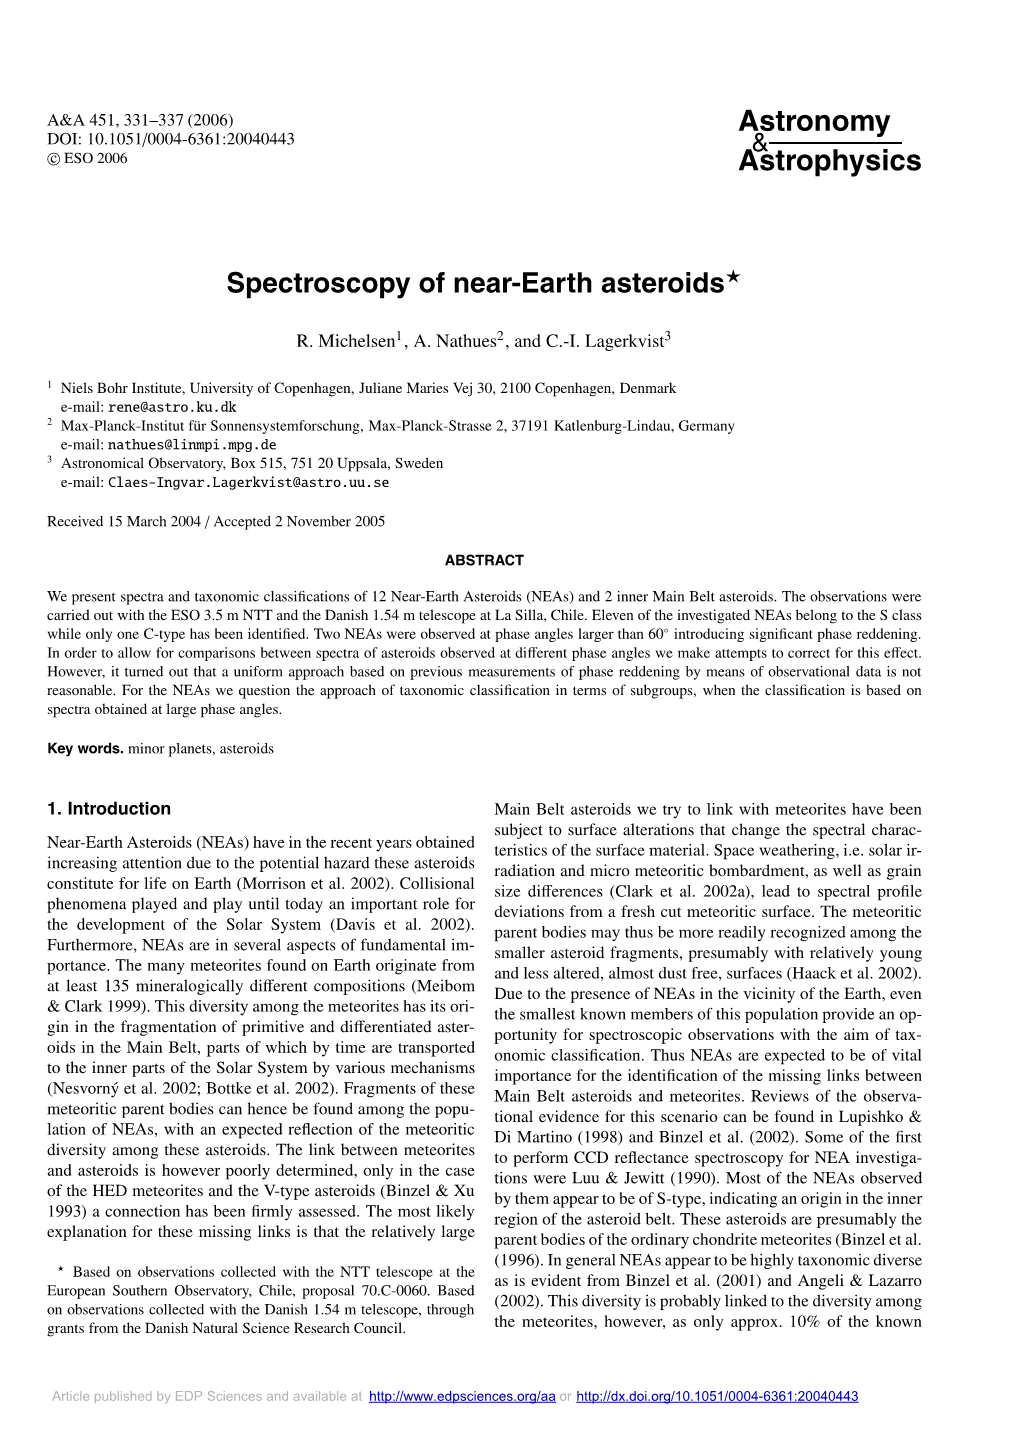 Spectroscopy of Near-Earth Asteroids